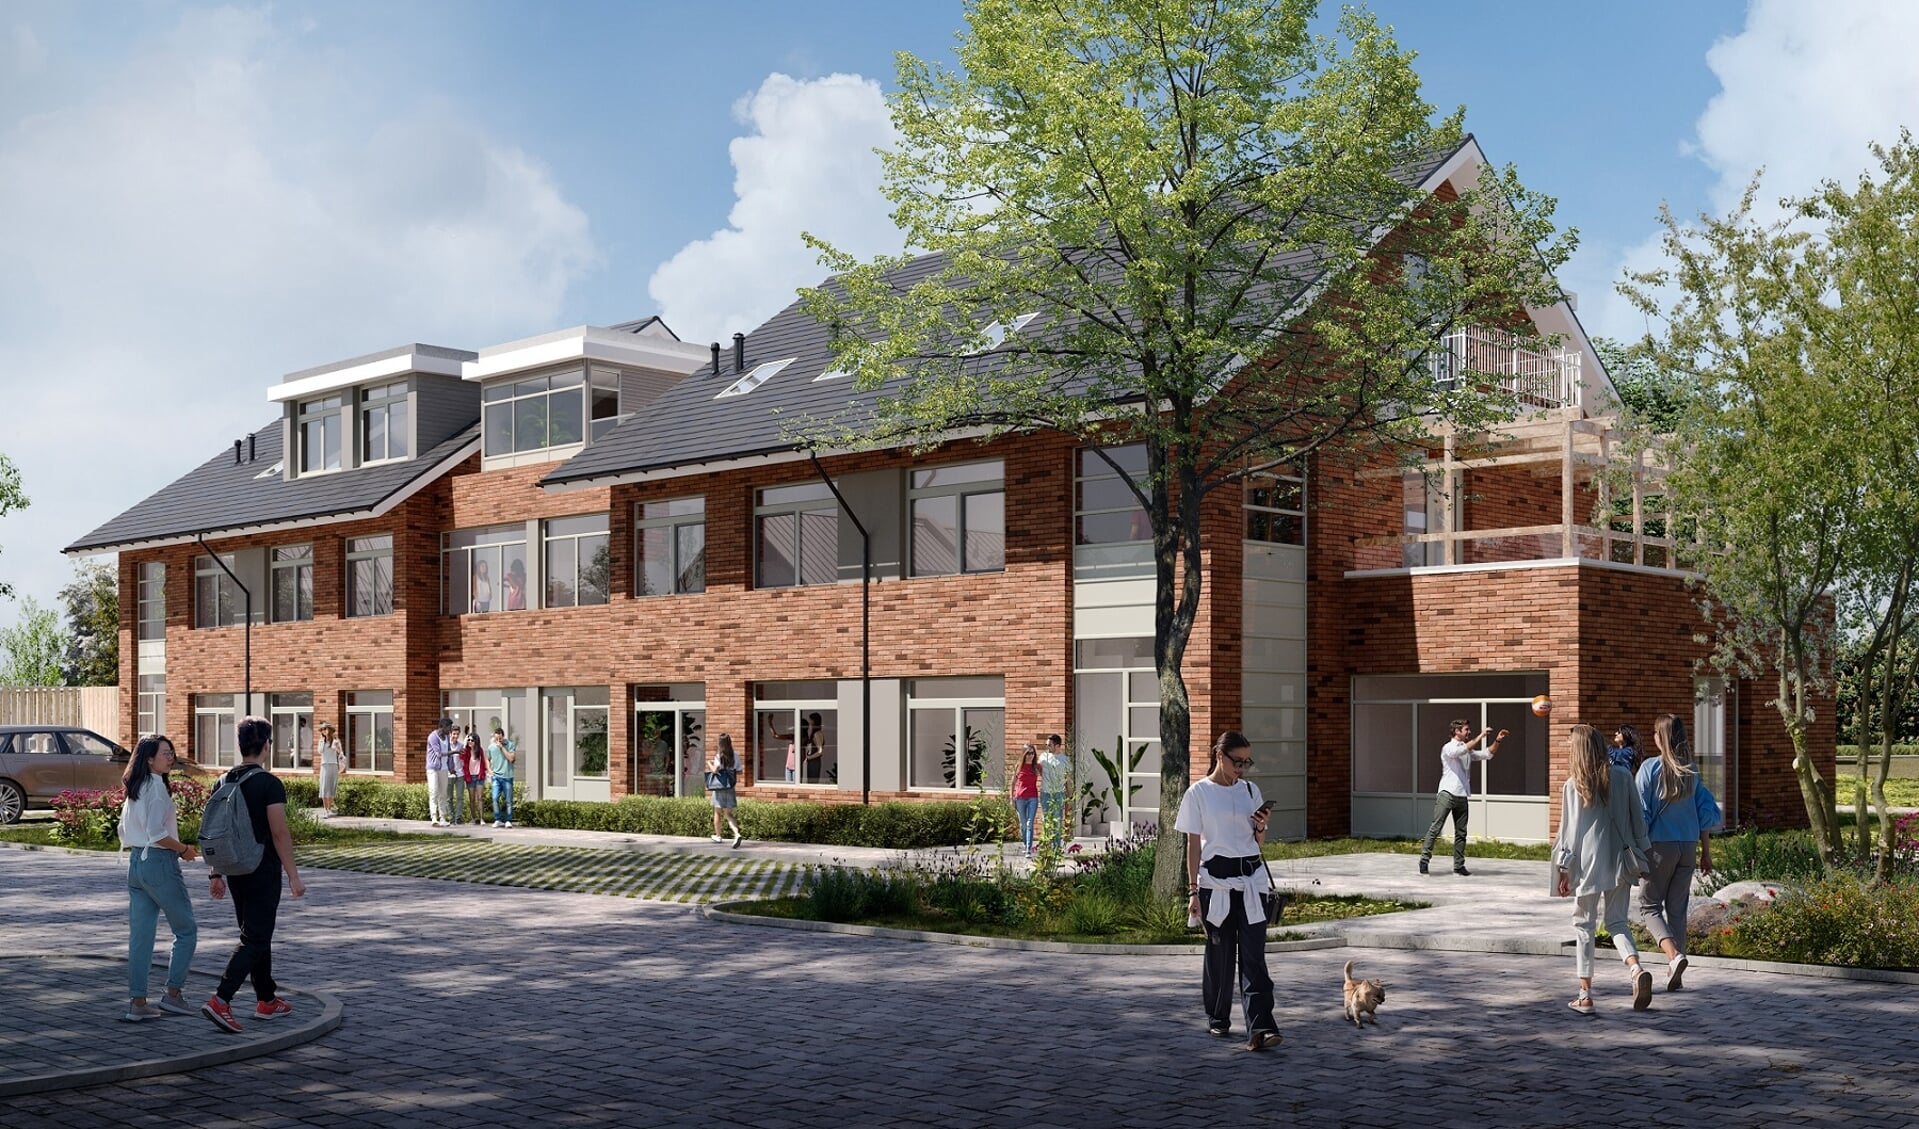 Voormalige schoolgebouw aan het Beekmos wordt omgebouwd tot huurwoningen